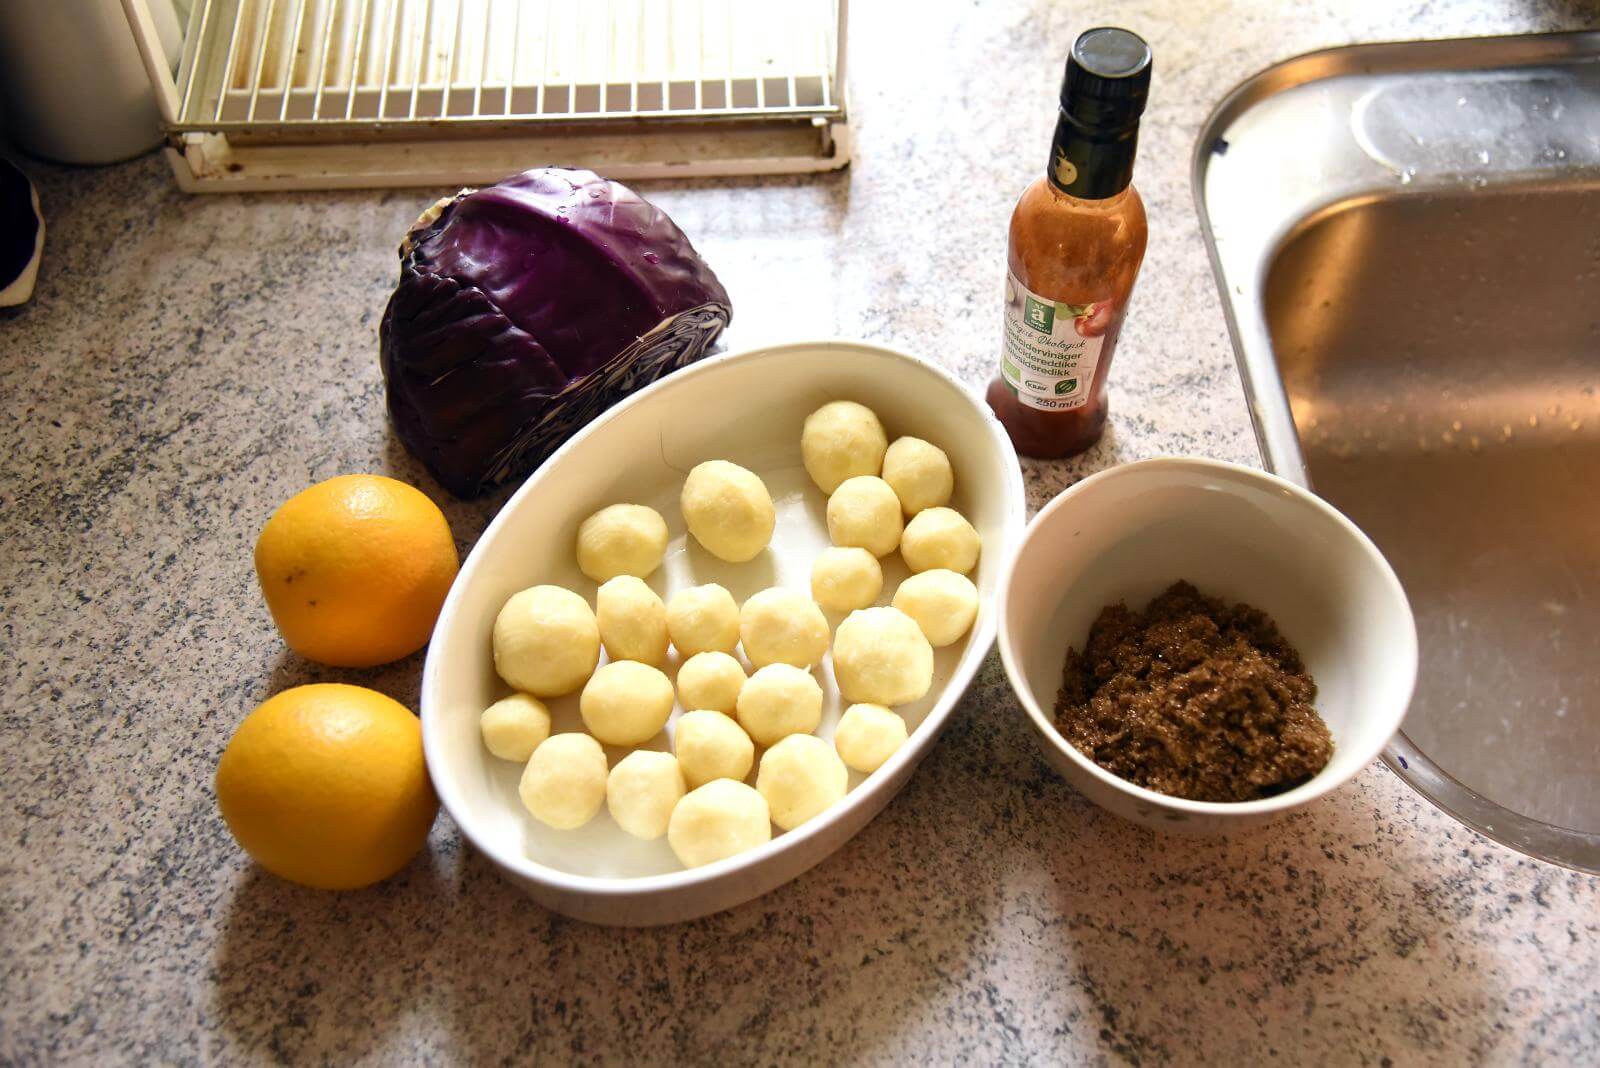 Ingredienser er funder frem på køkkenbordet. Appelsiner, rødkål, kartofler og brun farin